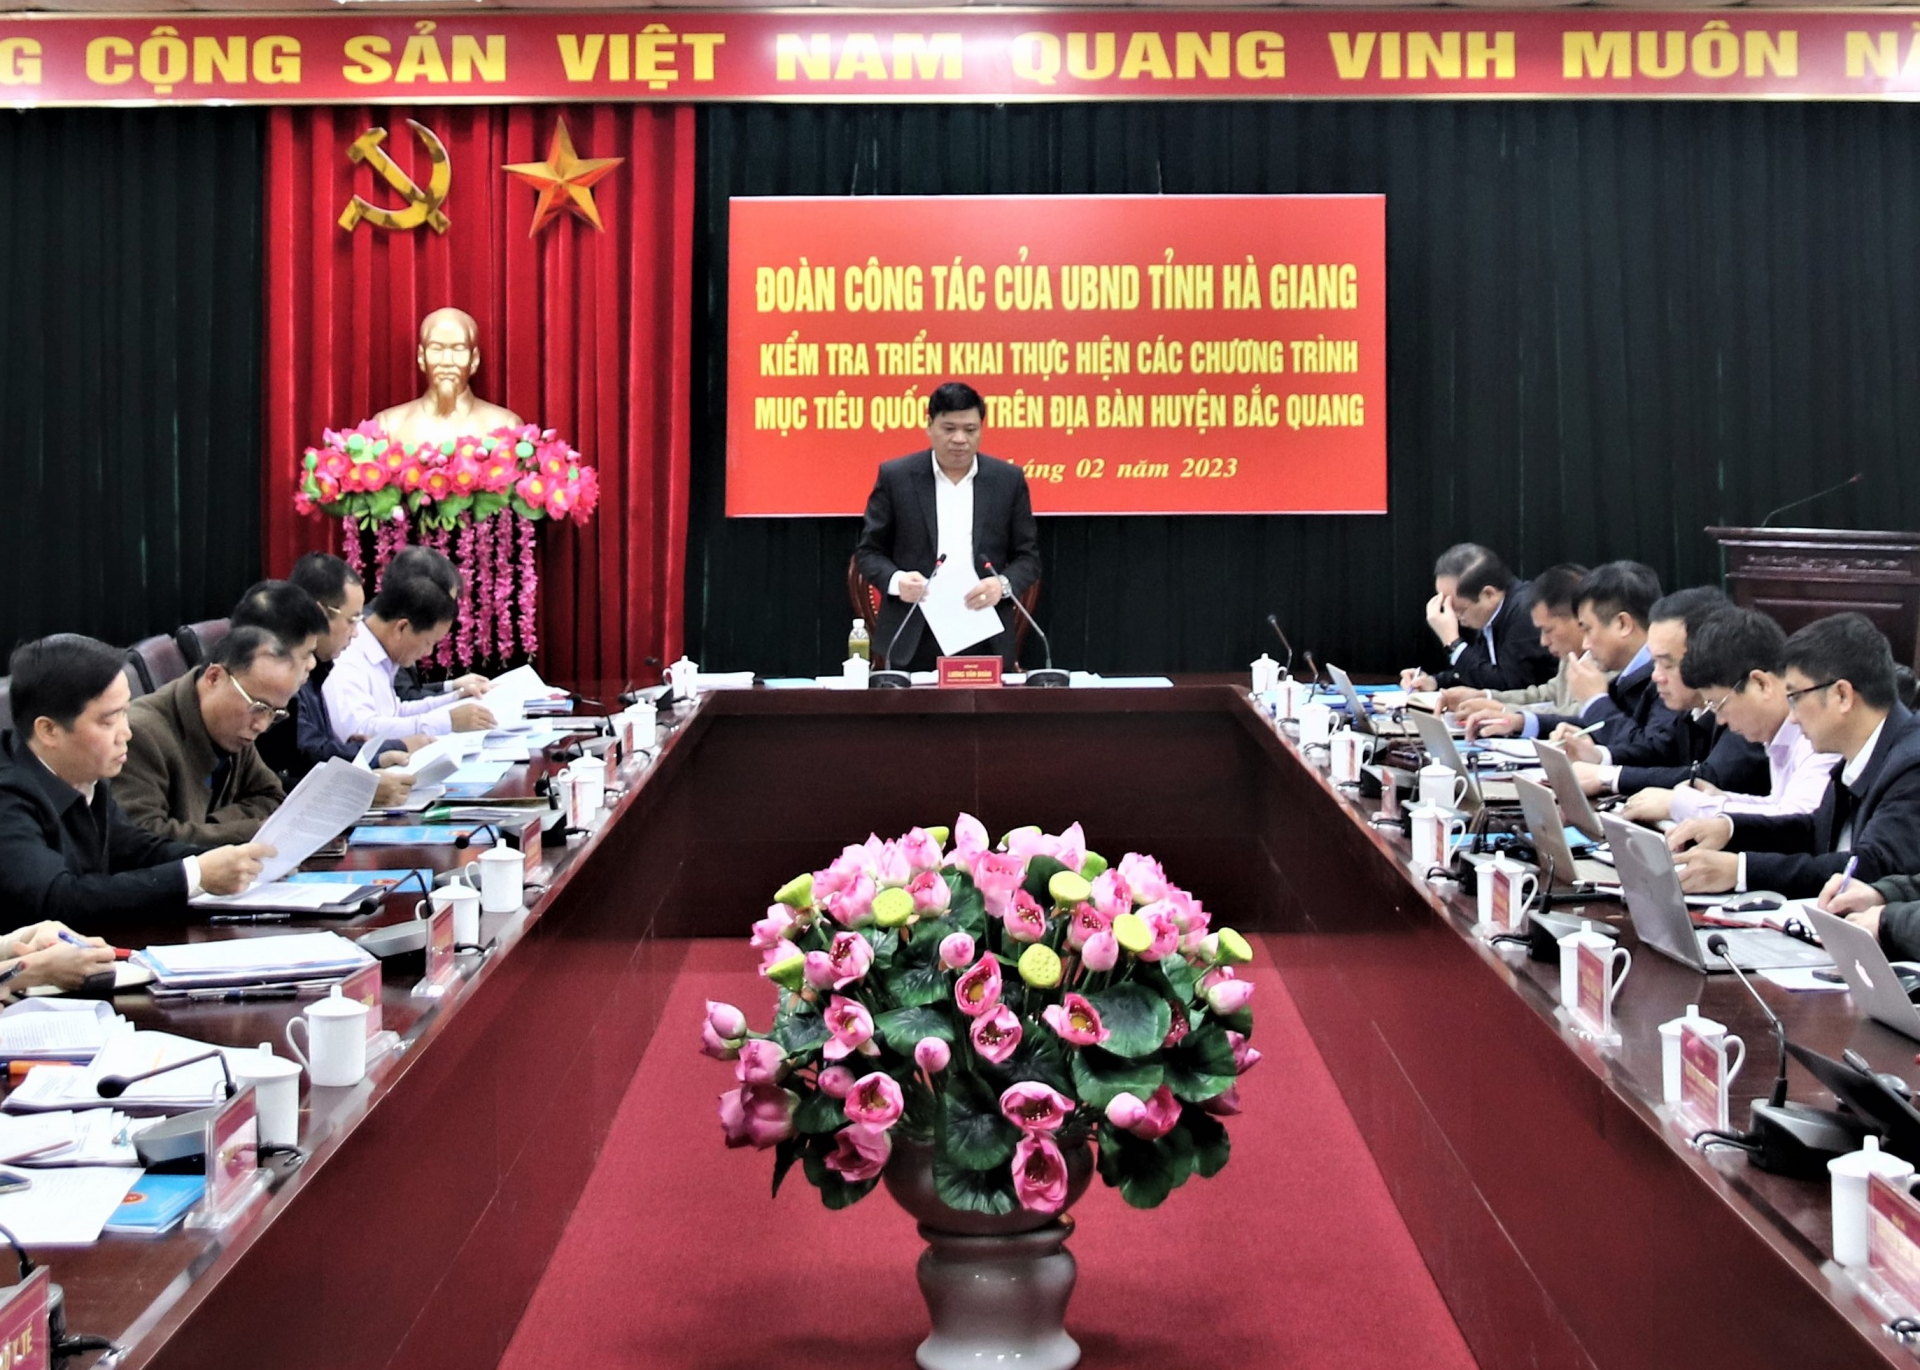 Đoàn công tác của UBND tỉnh làm việc với lãnh đạo huyện Bắc Quang và các cơ quan liên quan.